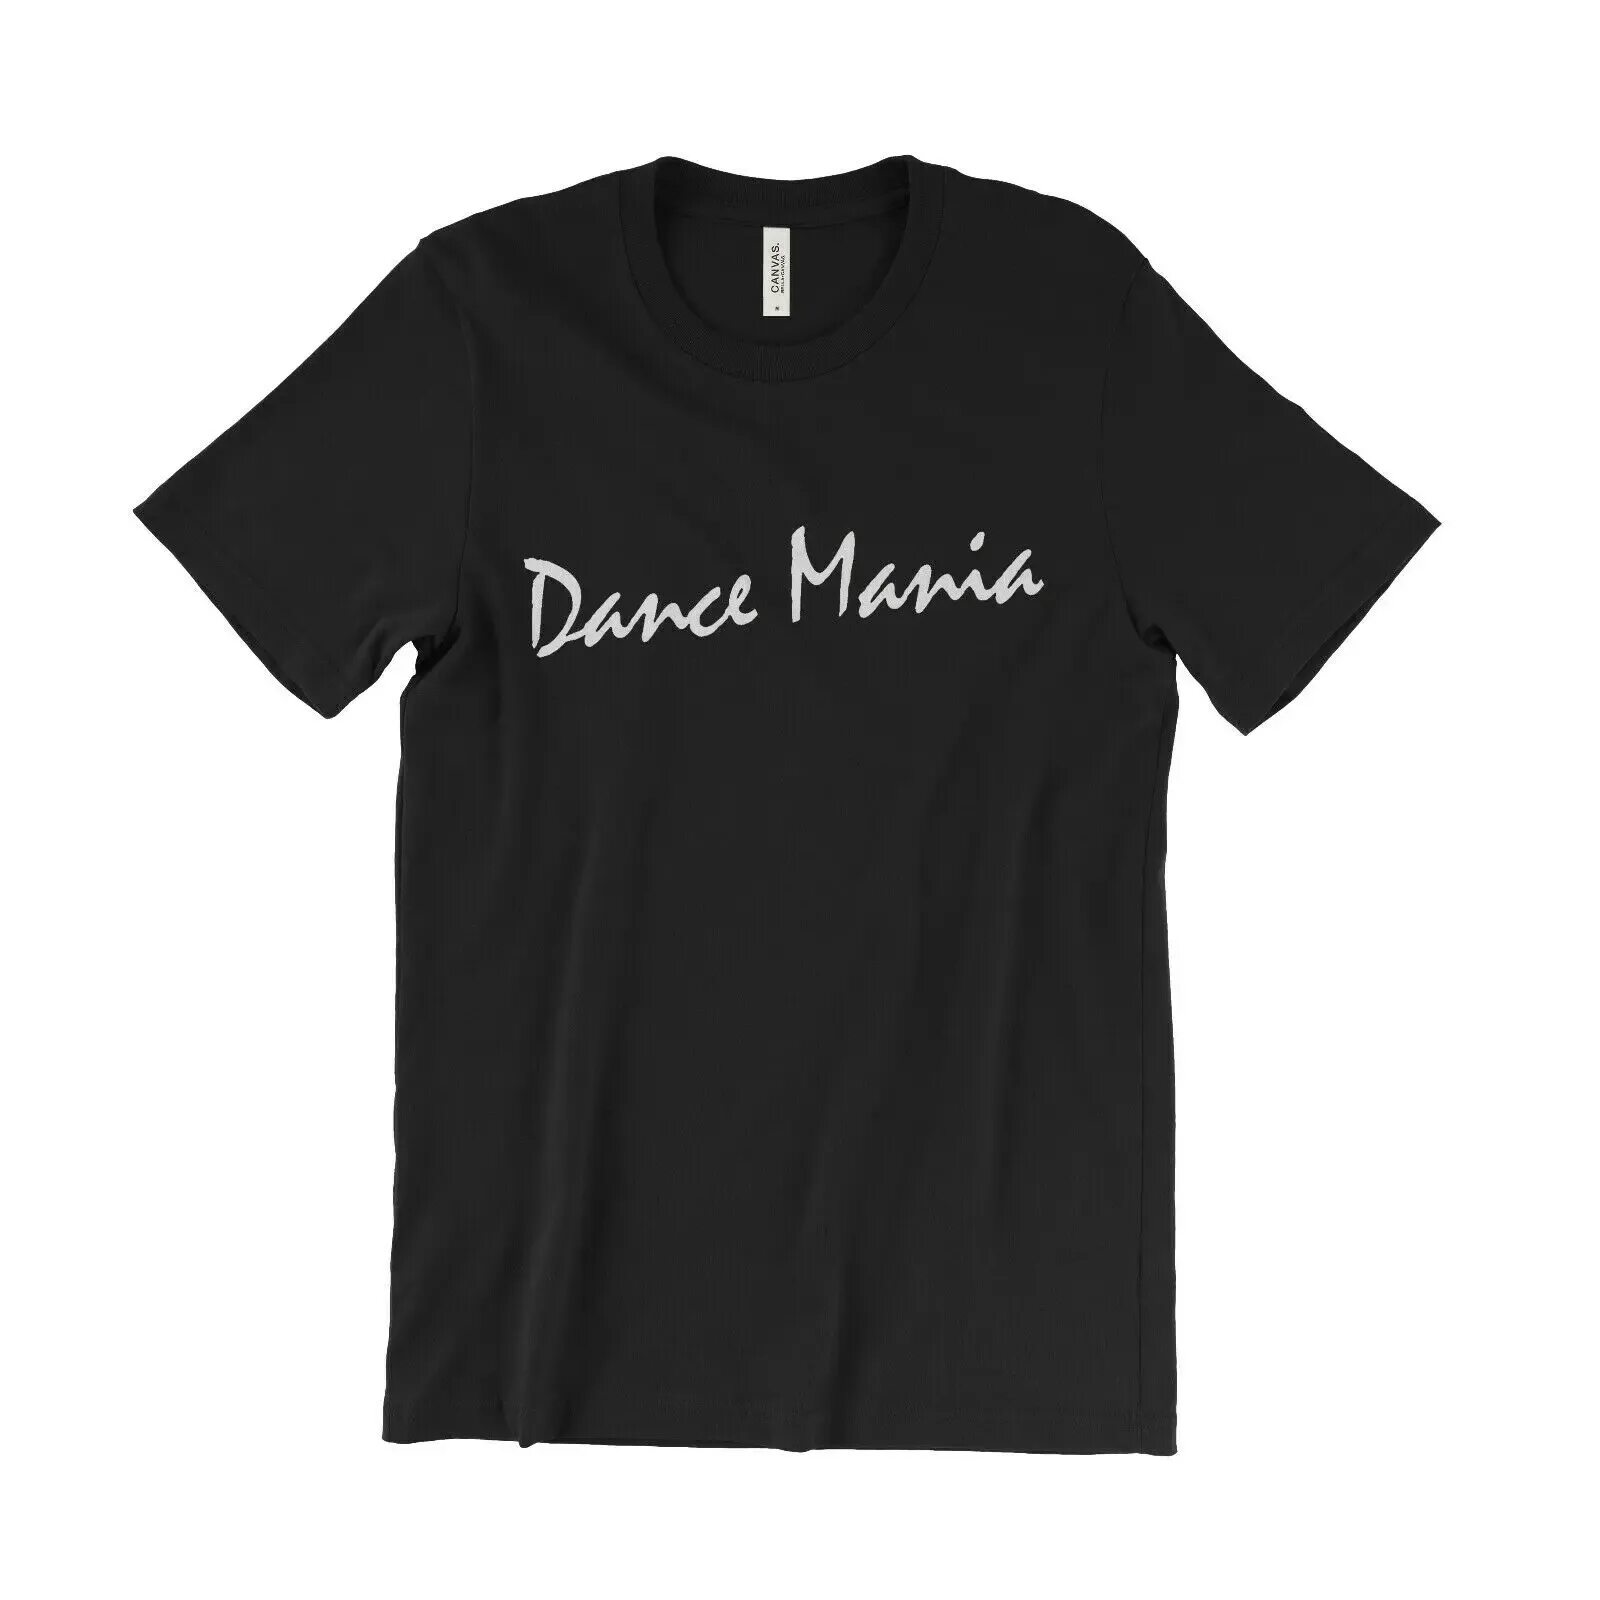 Dance mania. Футболка Dance Mania. Футболка Dance. Футболка Maelstrom. Футболка no Dancing.